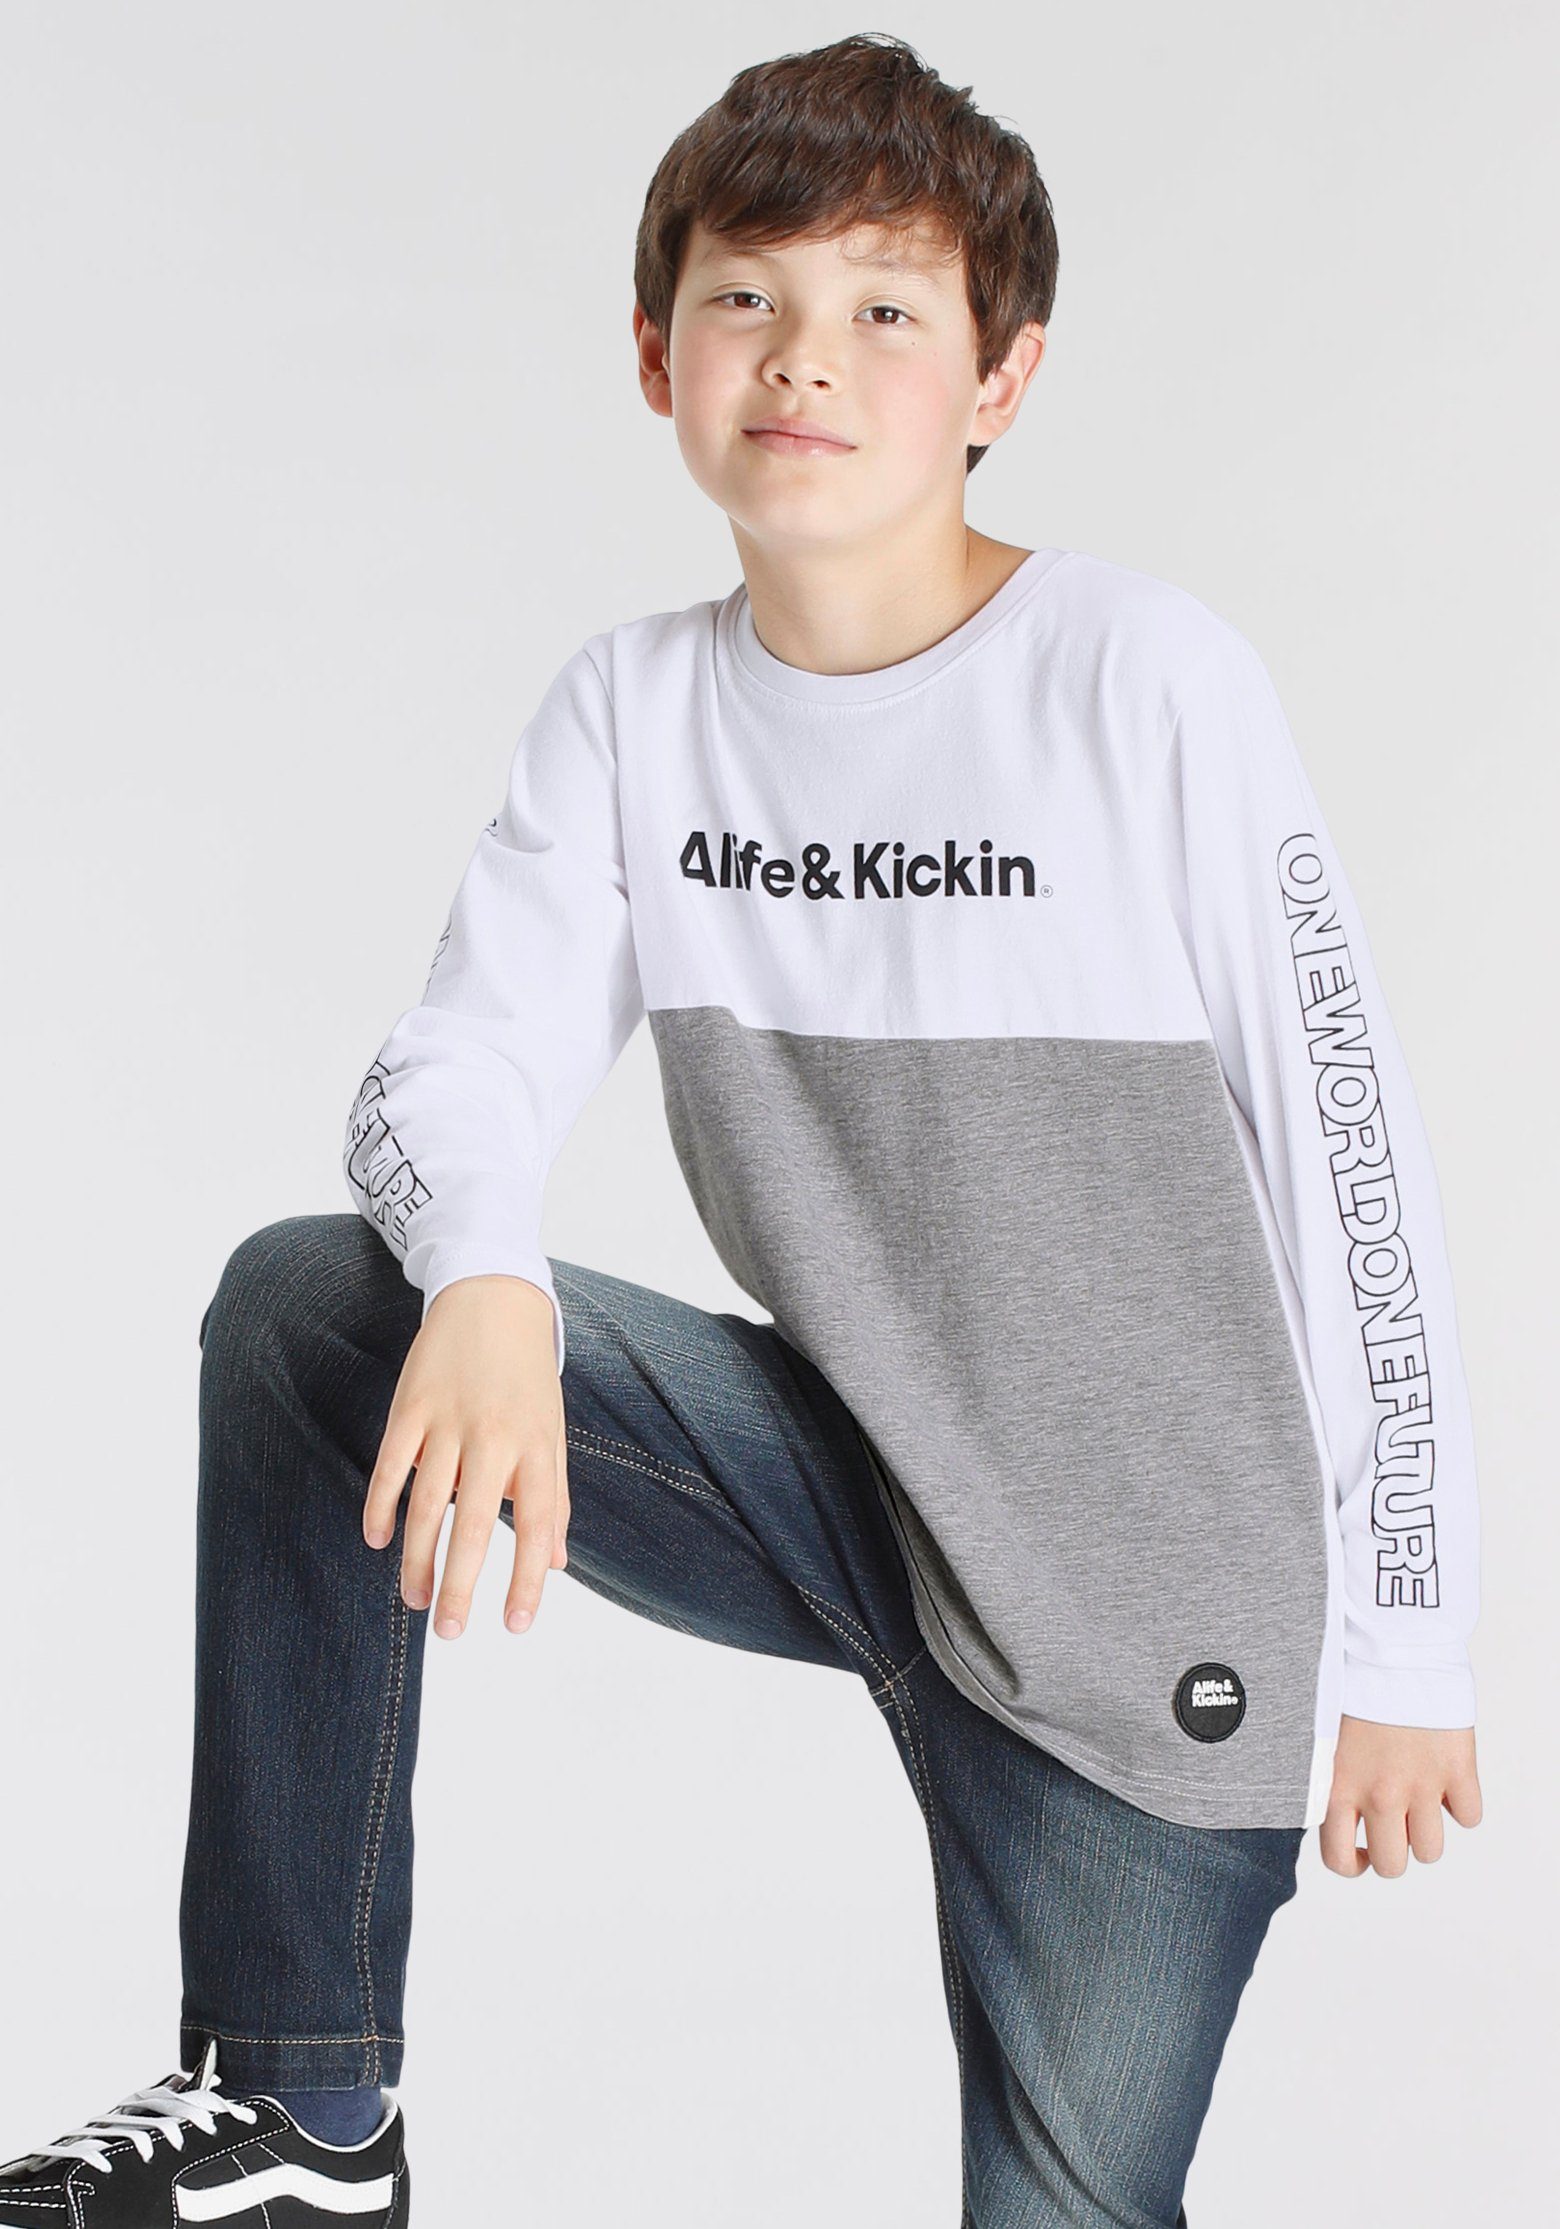 Alife & Kickin Langarmshirt Colorblocking in melierter Qualität, zweifarbig | Rundhalsshirts